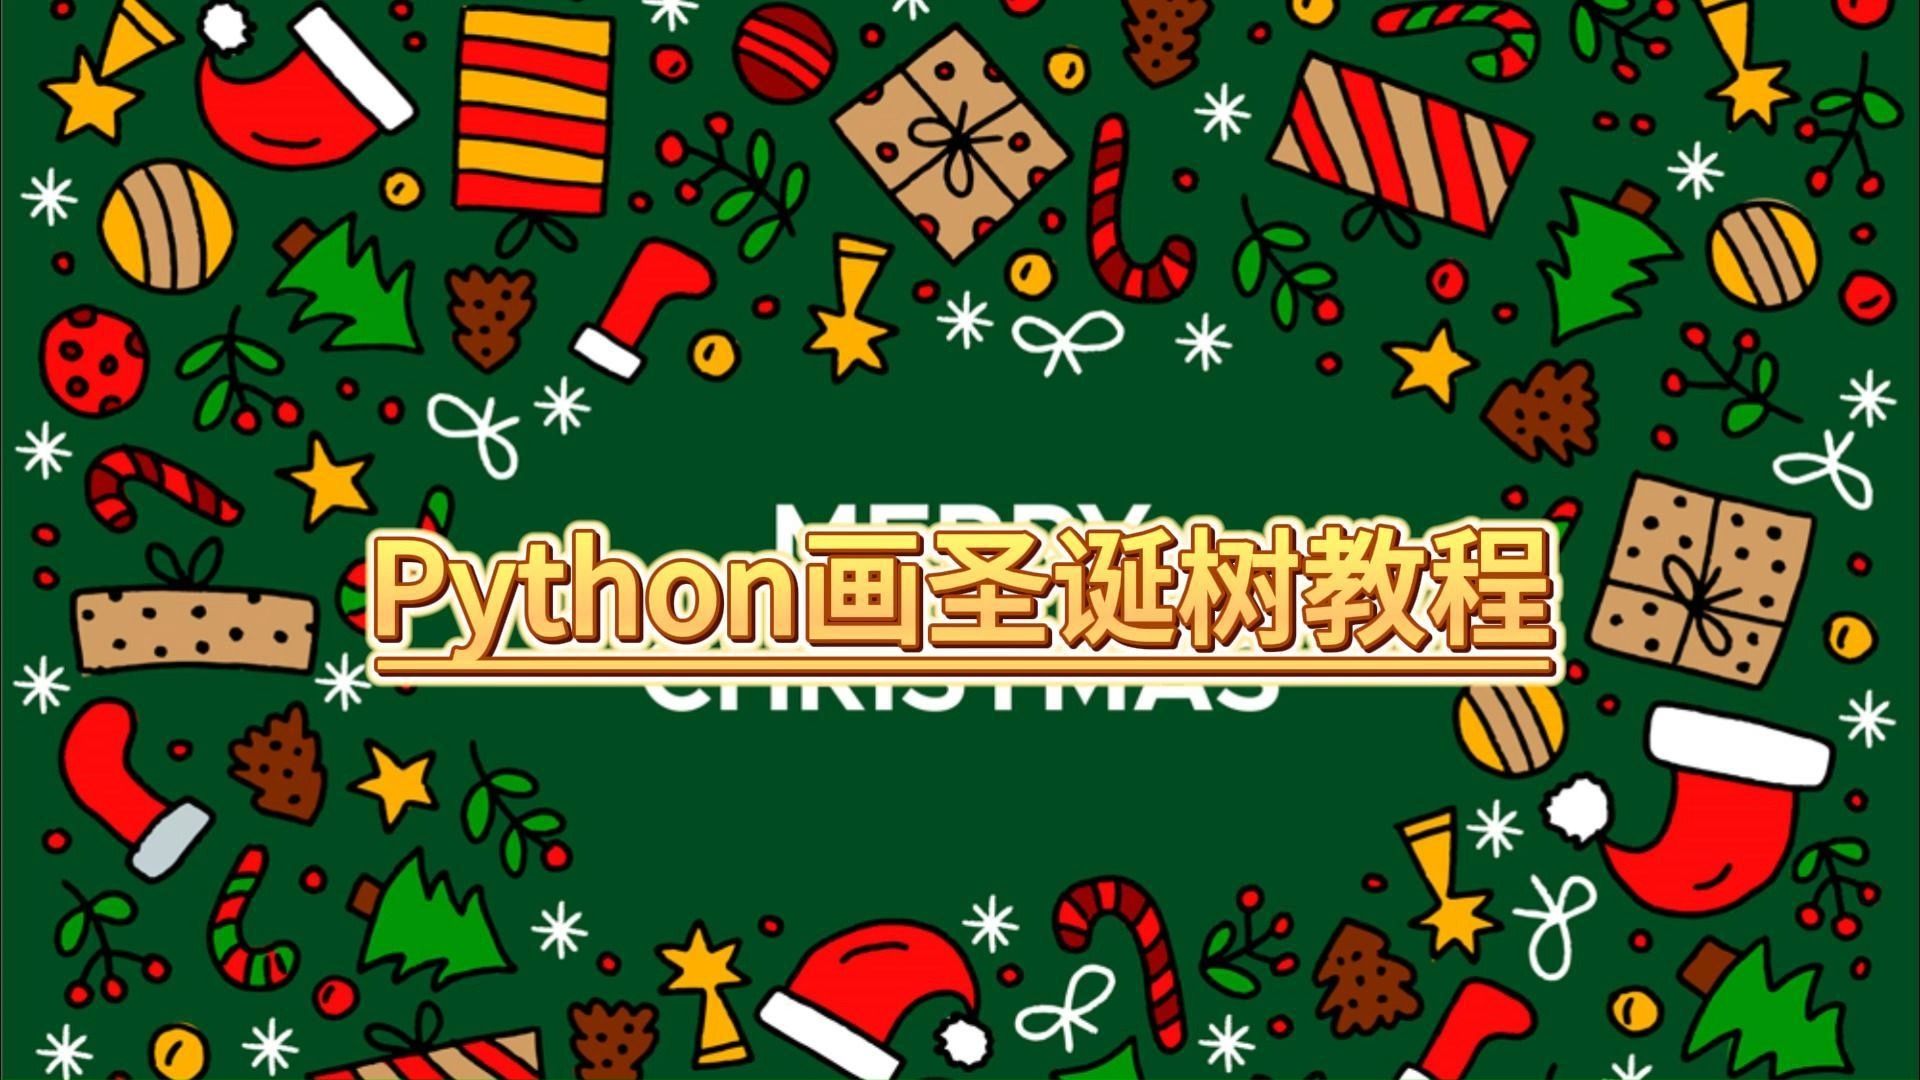 【python教程】圣诞节快来了,分享一个python画圣诞树教程,快快做给你